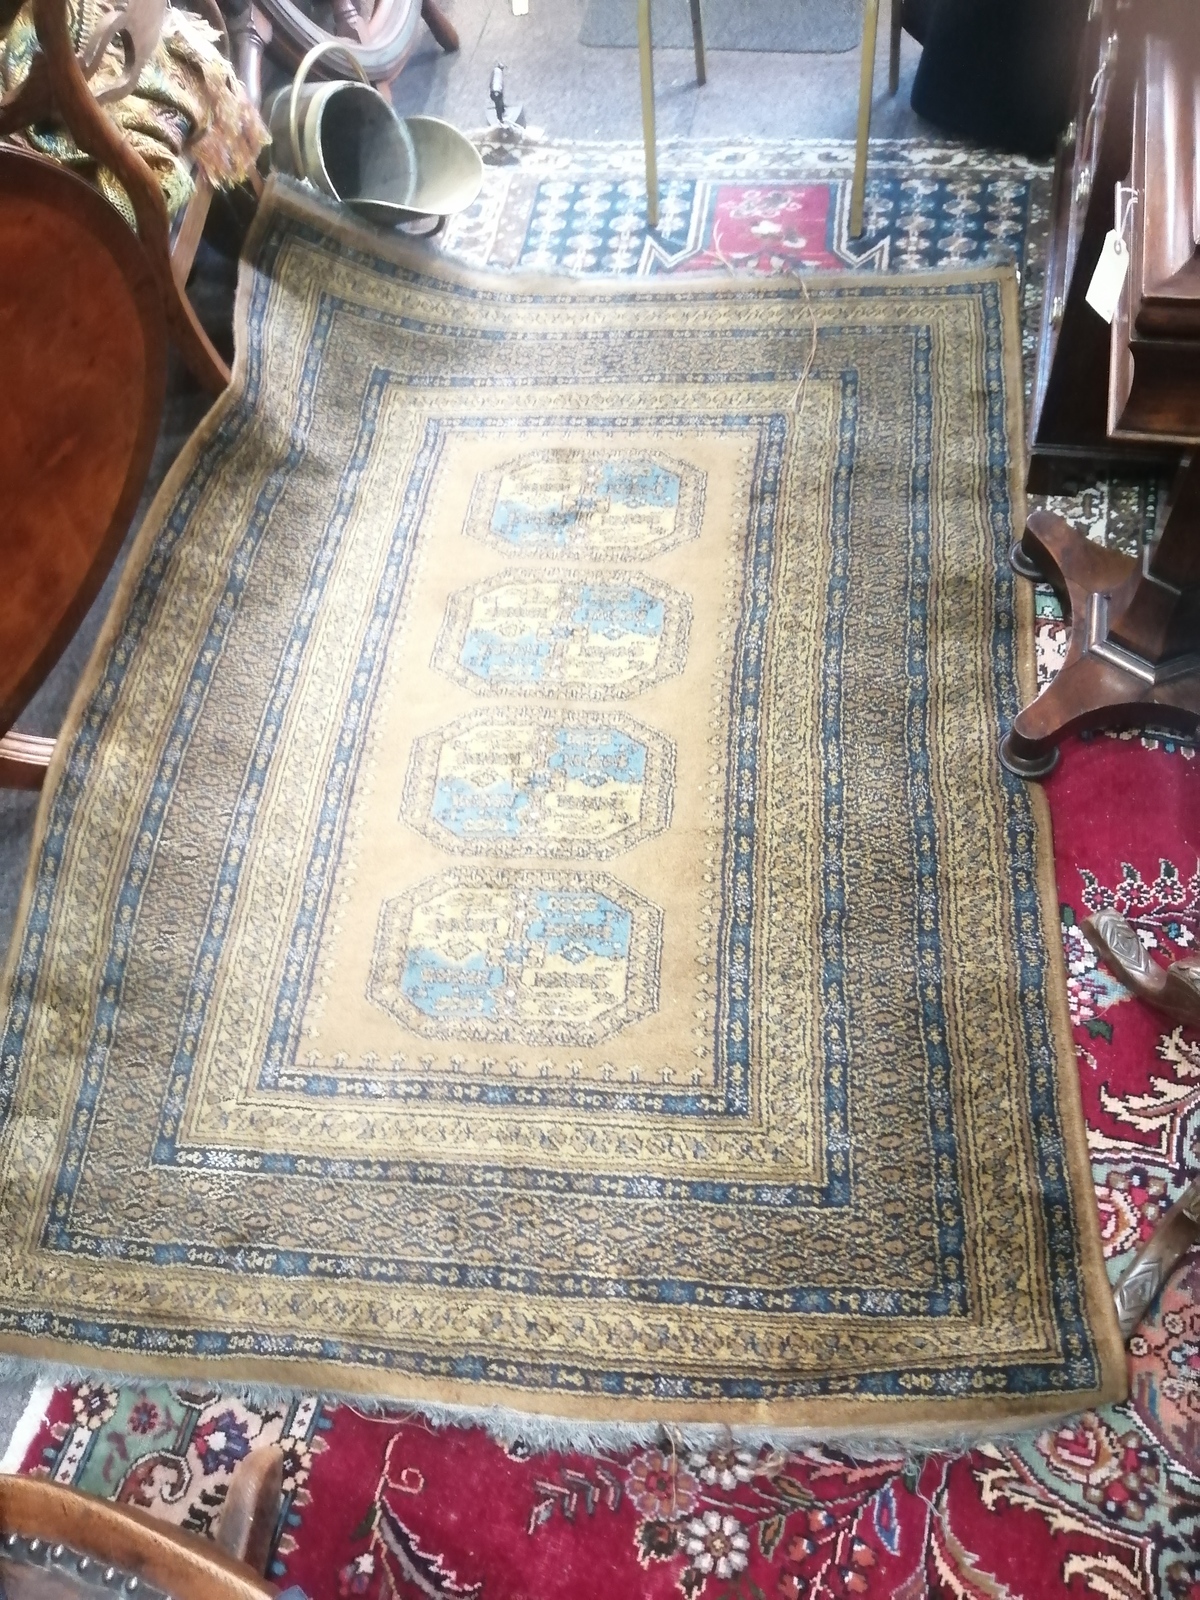 Turkoman Style Carpet